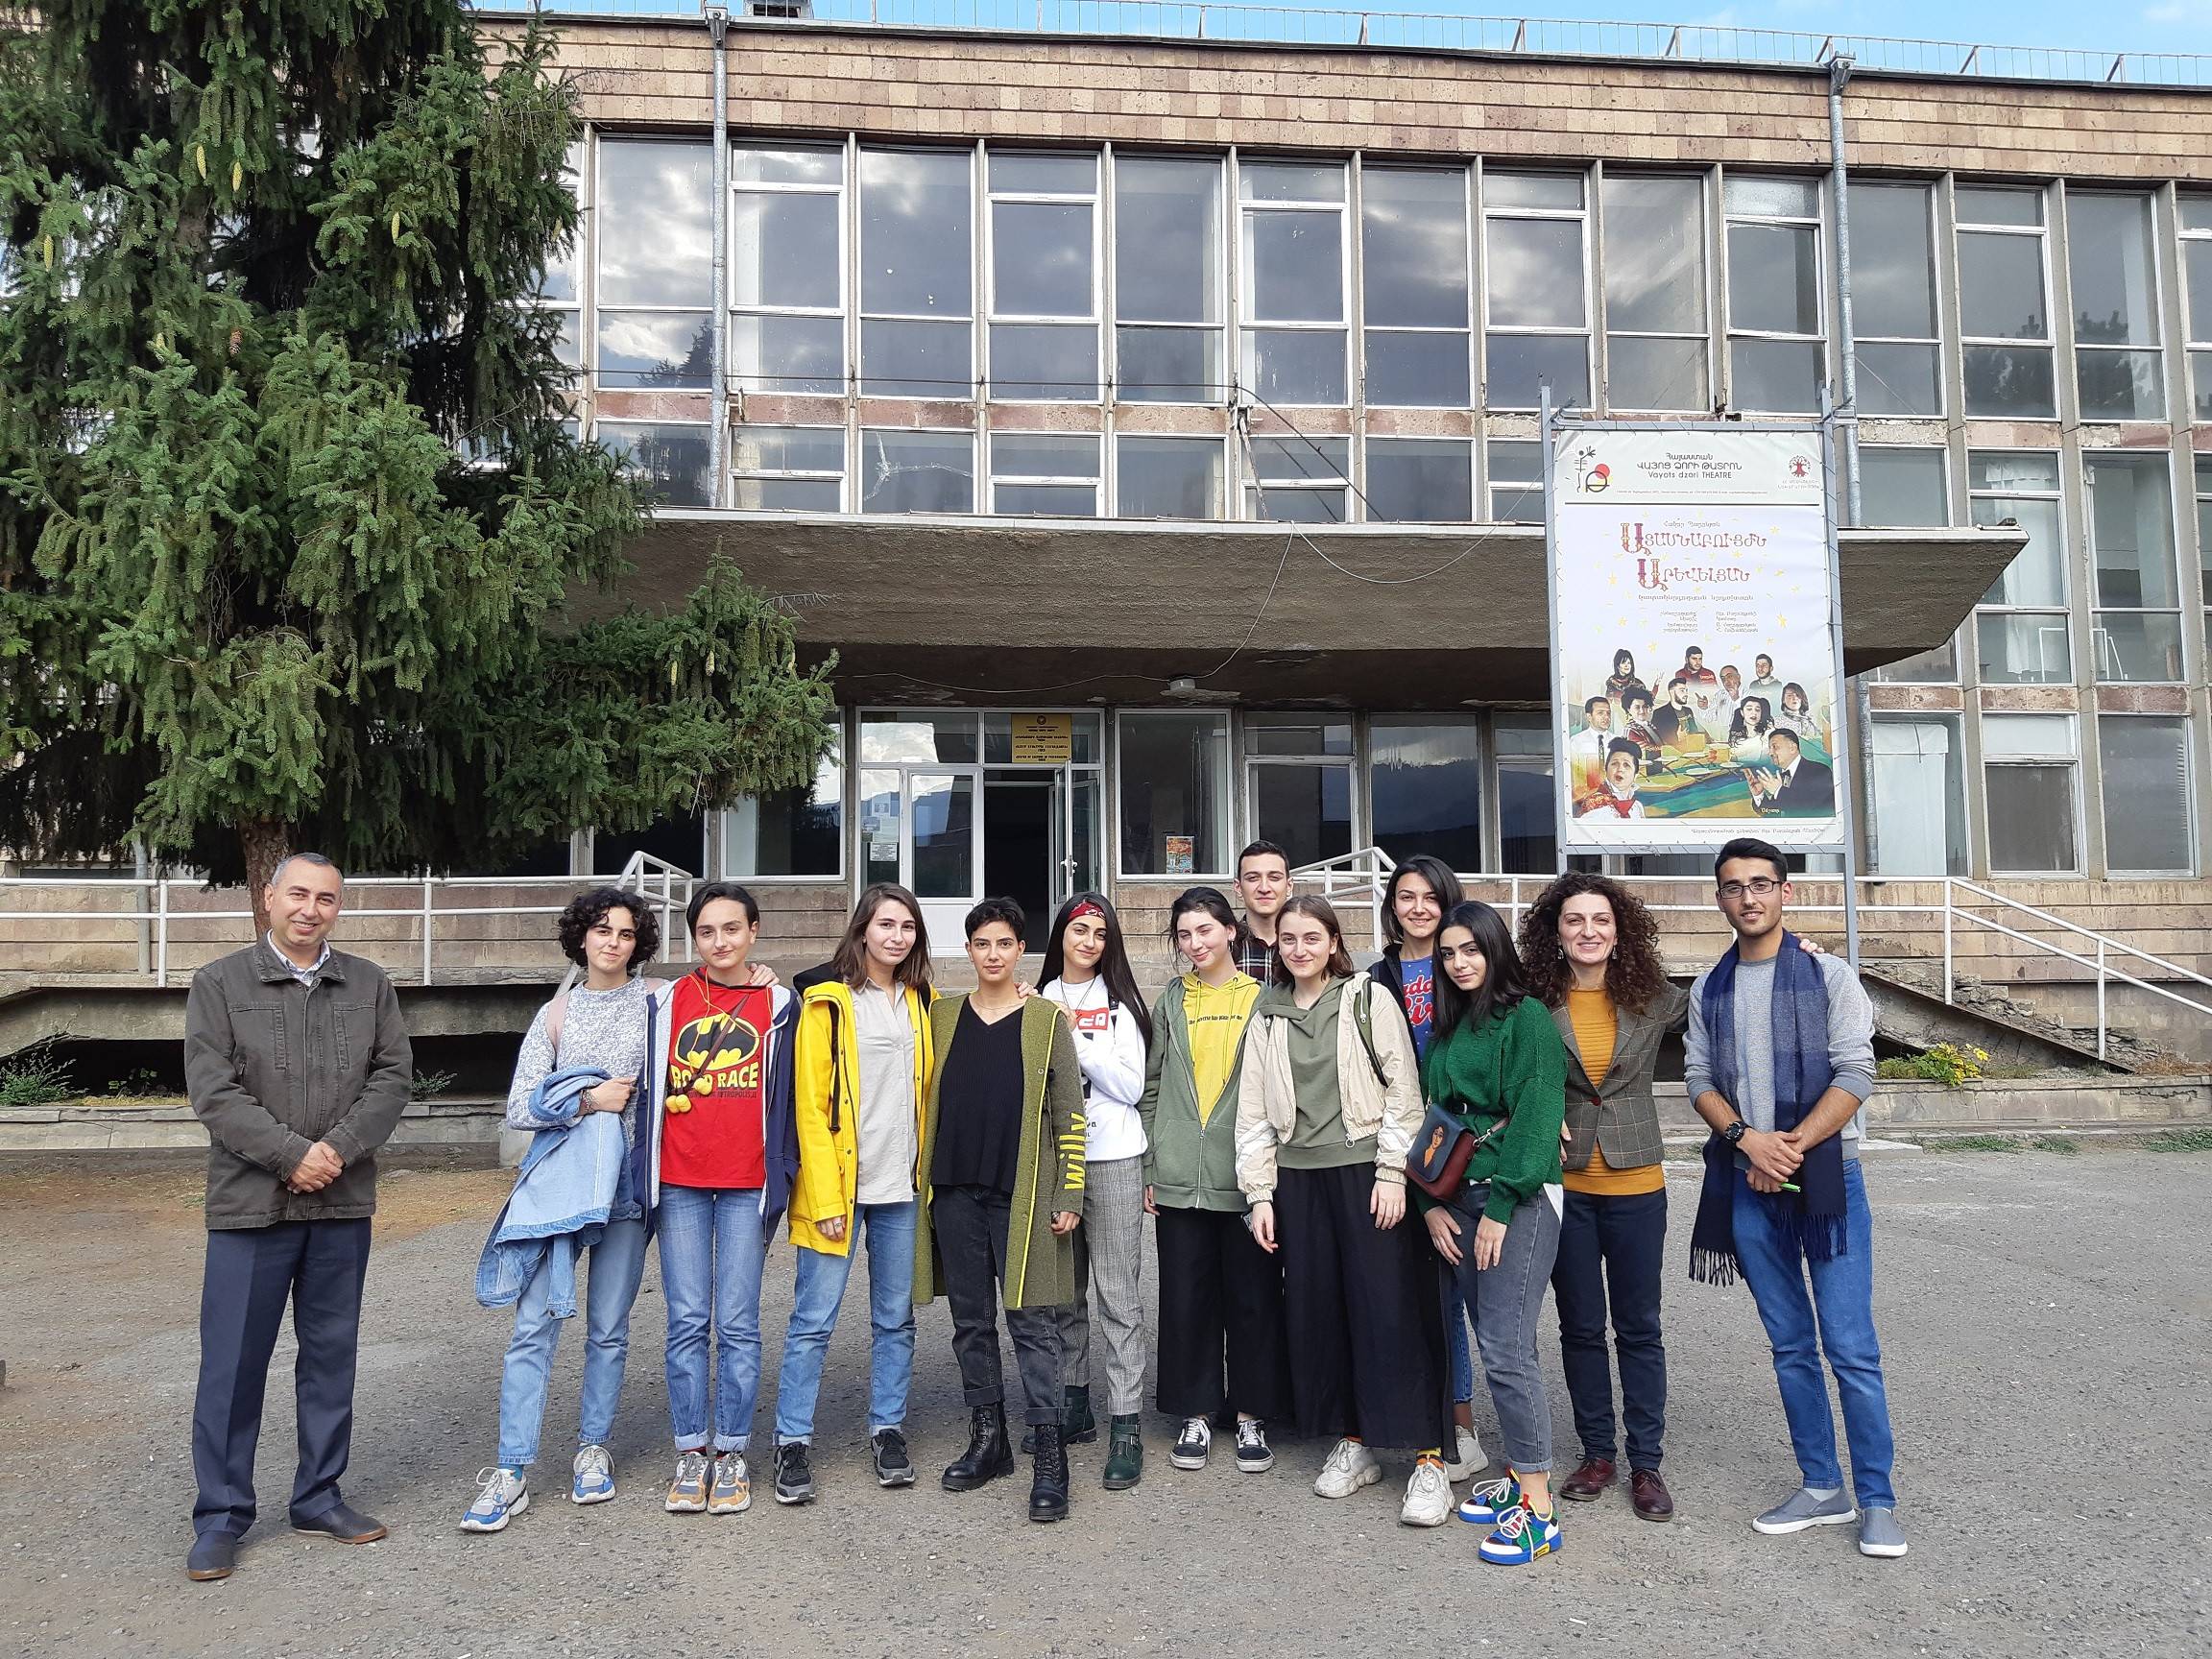 Գաֆէսճեան արվեստի կենտրոնը և Beeline-ը Հայաստանի ազգային պատկերասրահի Եղեգնաձորի մասնաճյուղում ներկայացրեցին «Արվեստանոց» ցուցադրությունը